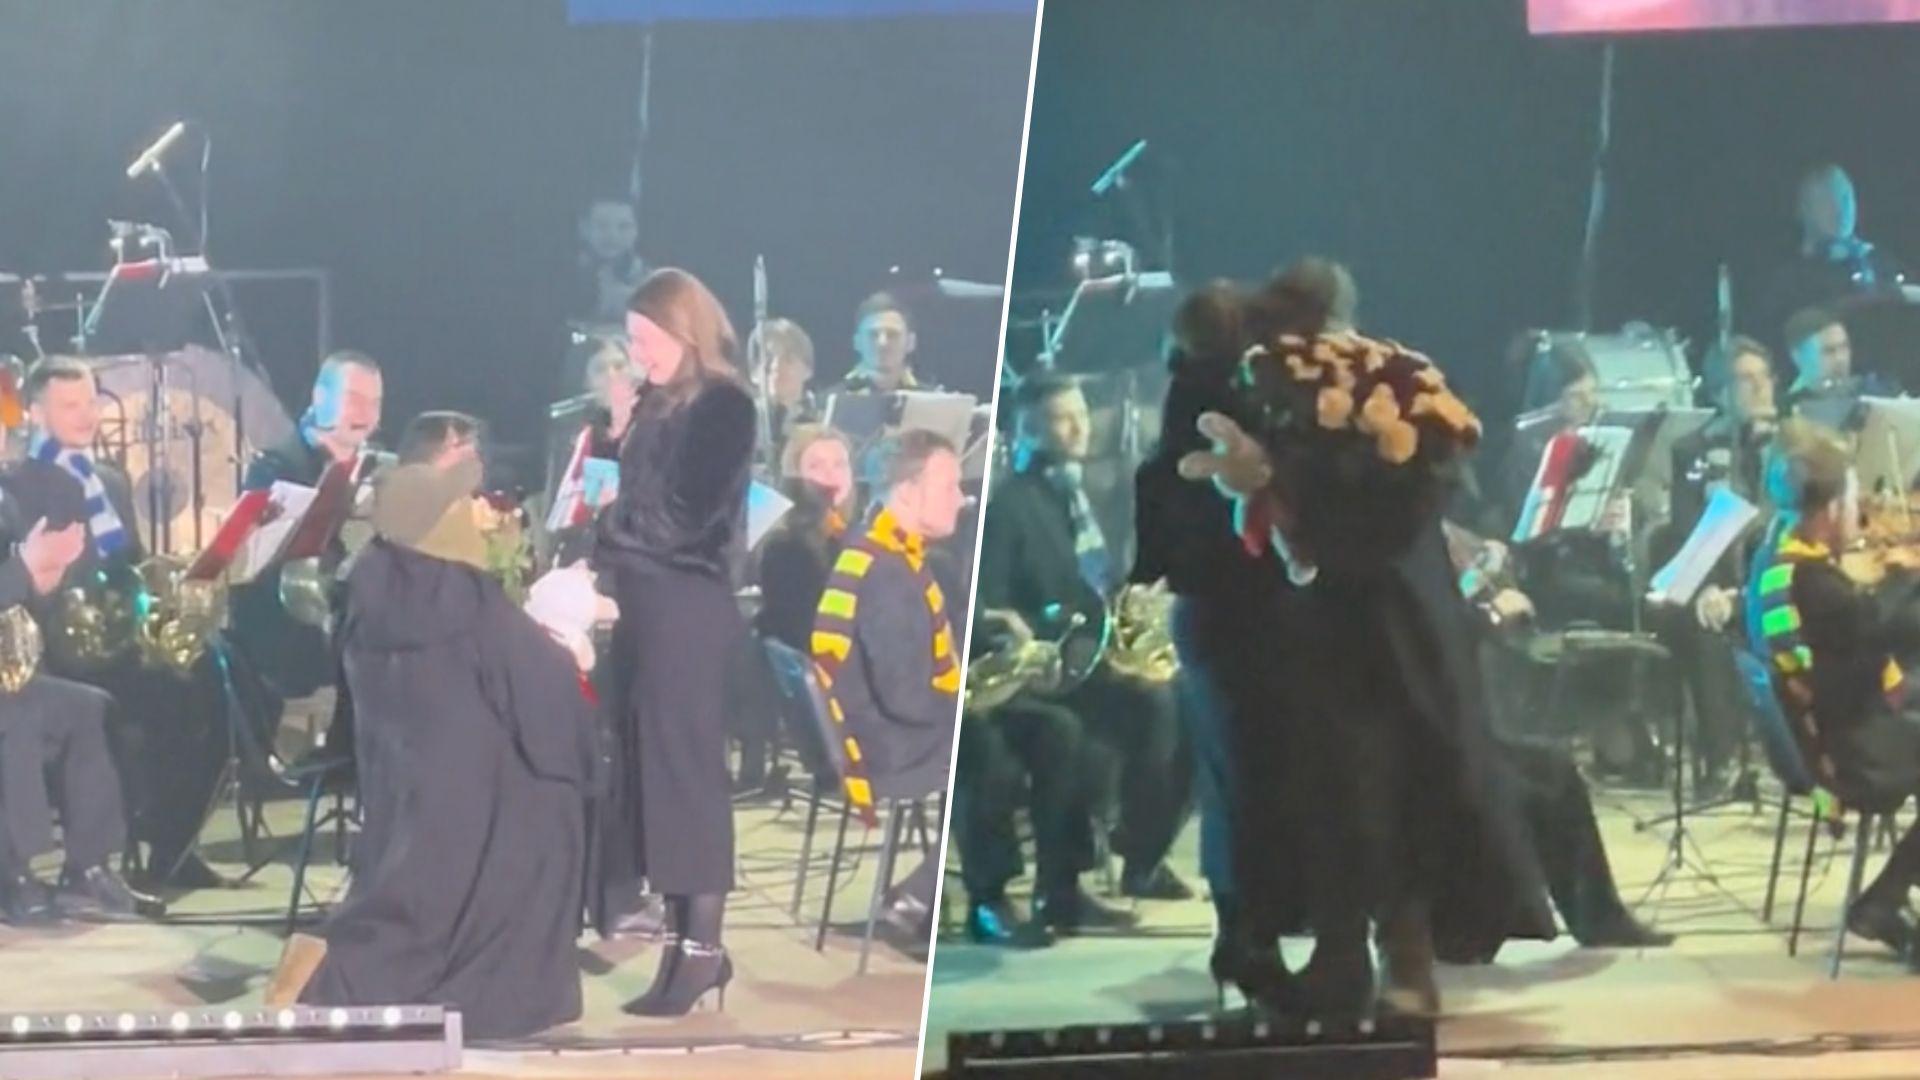 Военный сделал предложение любимой на концерте с музыкой из Гарри Поттера - видео